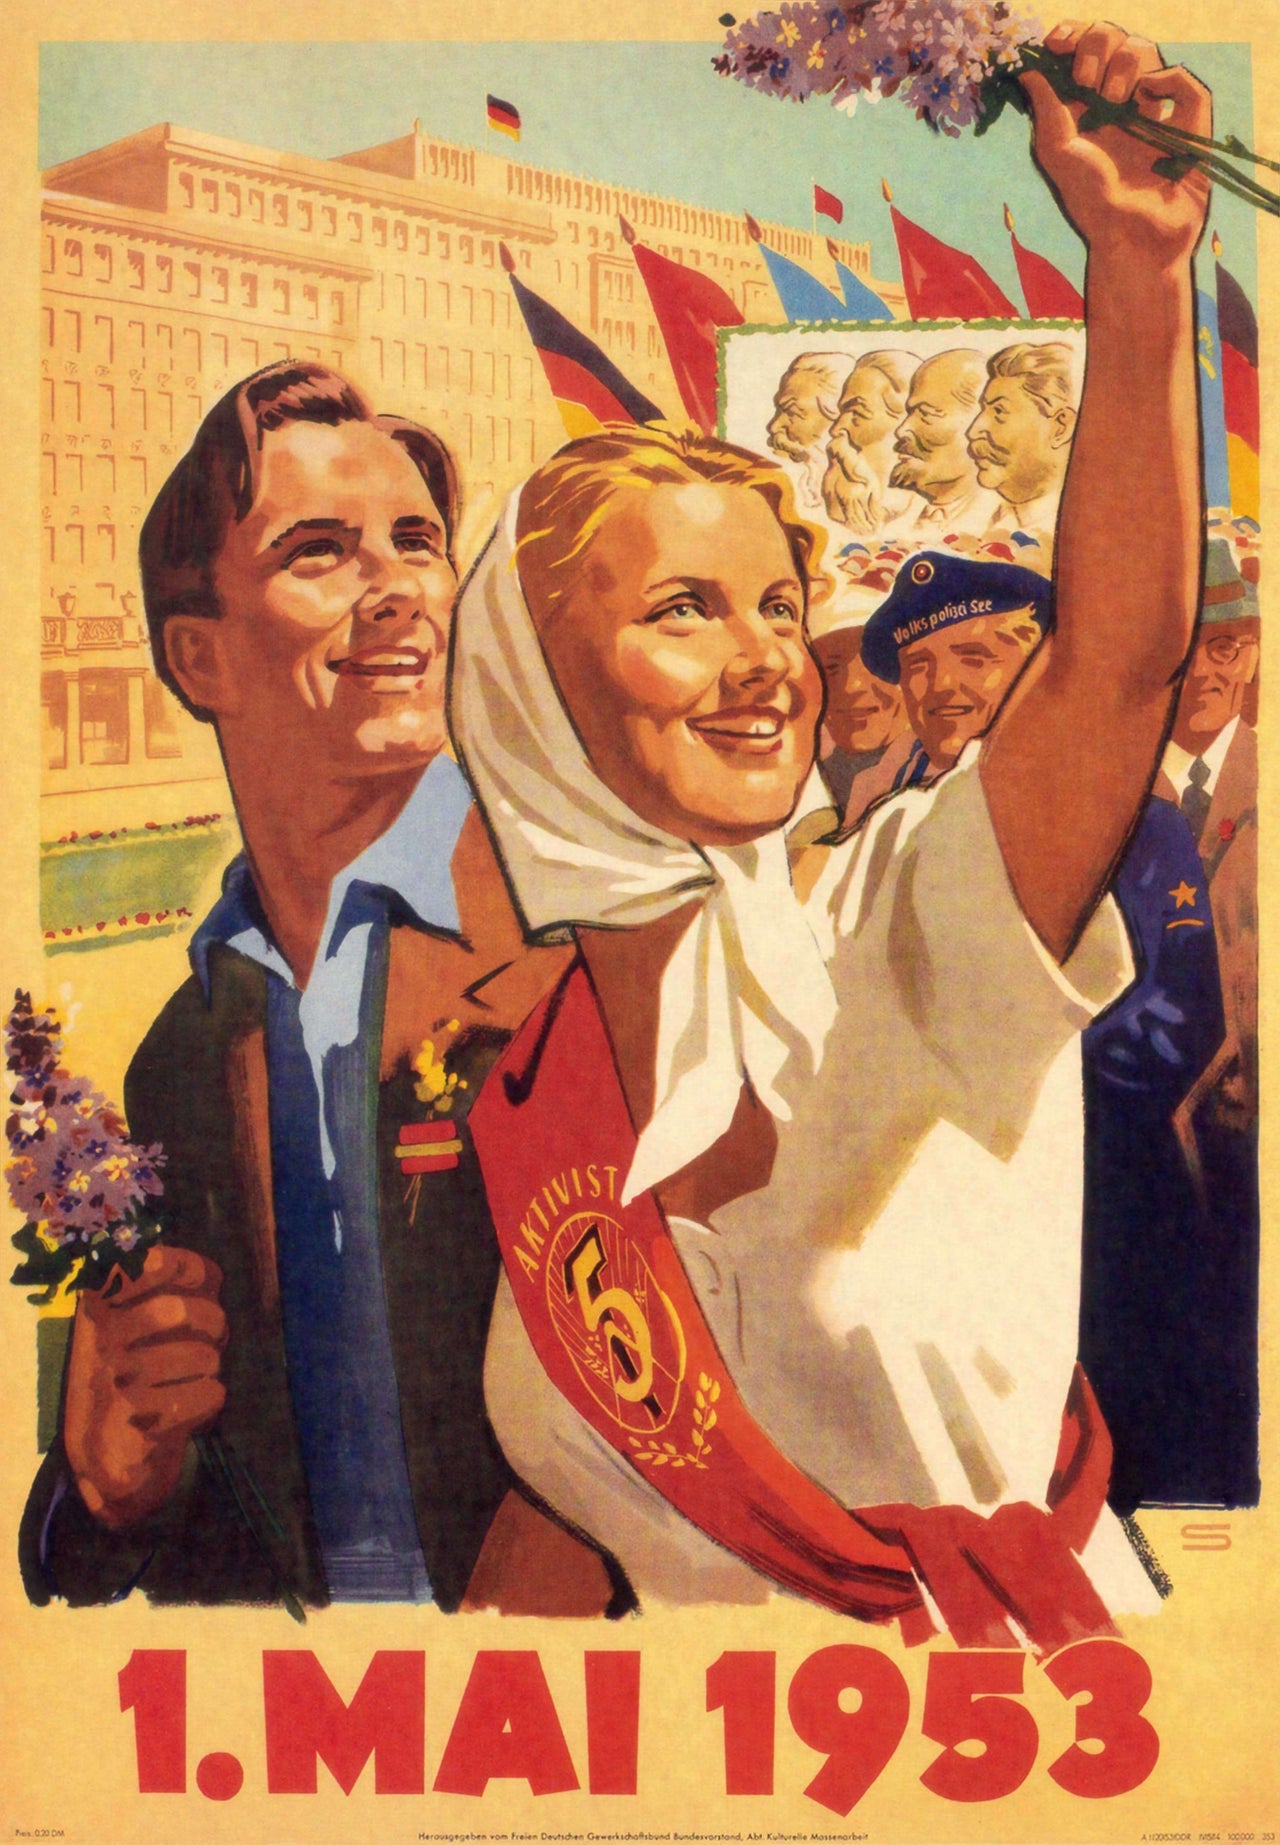 1sta maj 1953 - Poster från DDR